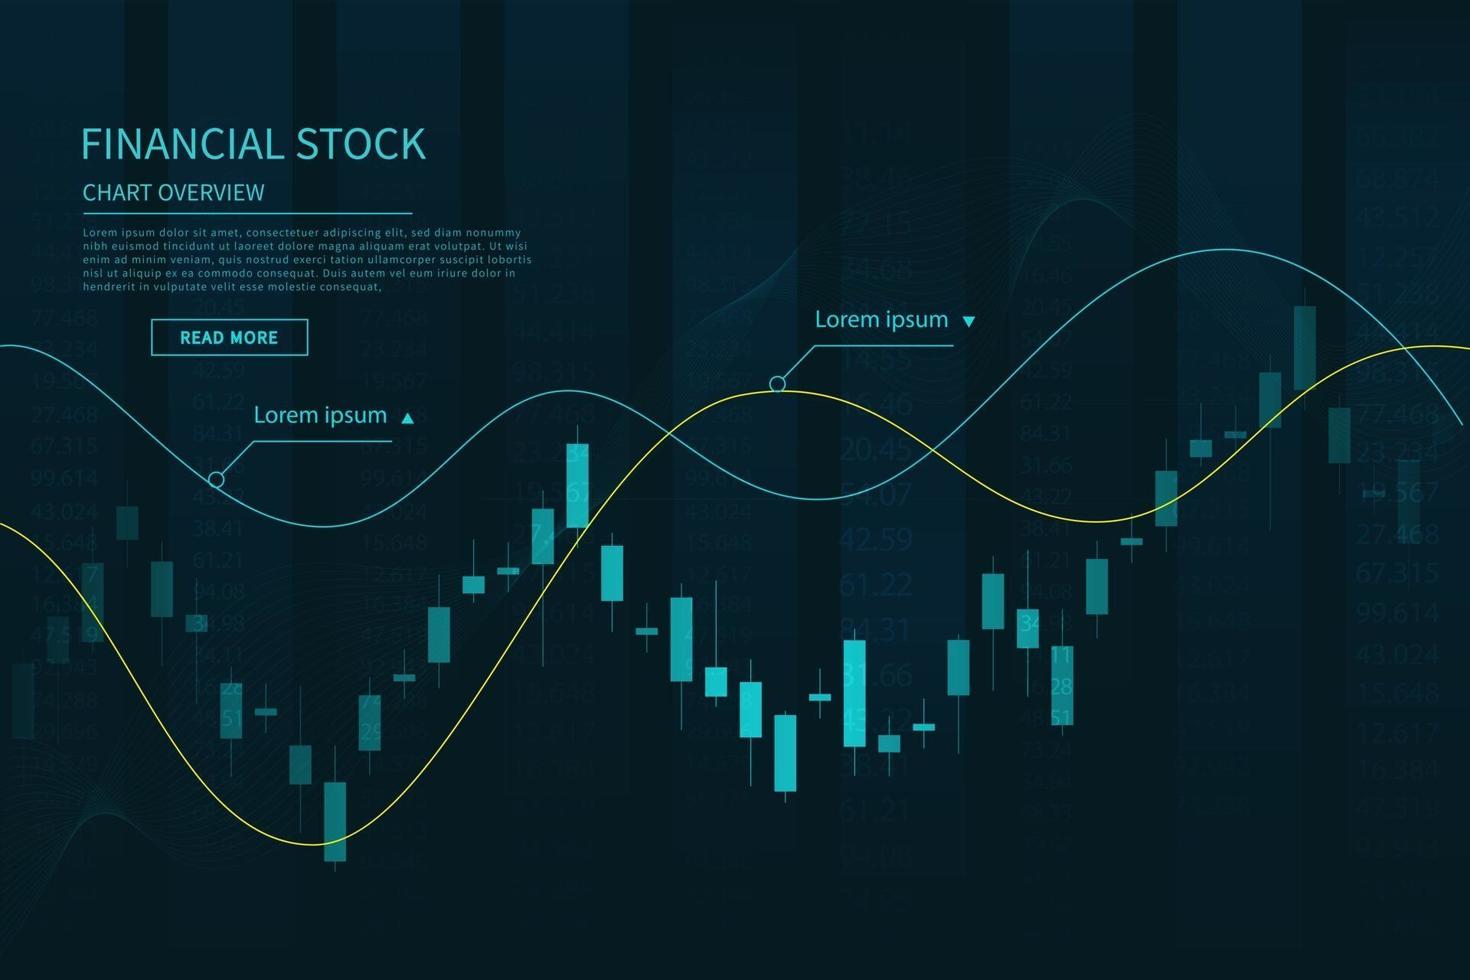 Candlestick-Chart in Finanzmarktillustration auf blauem Hintergrund vektor